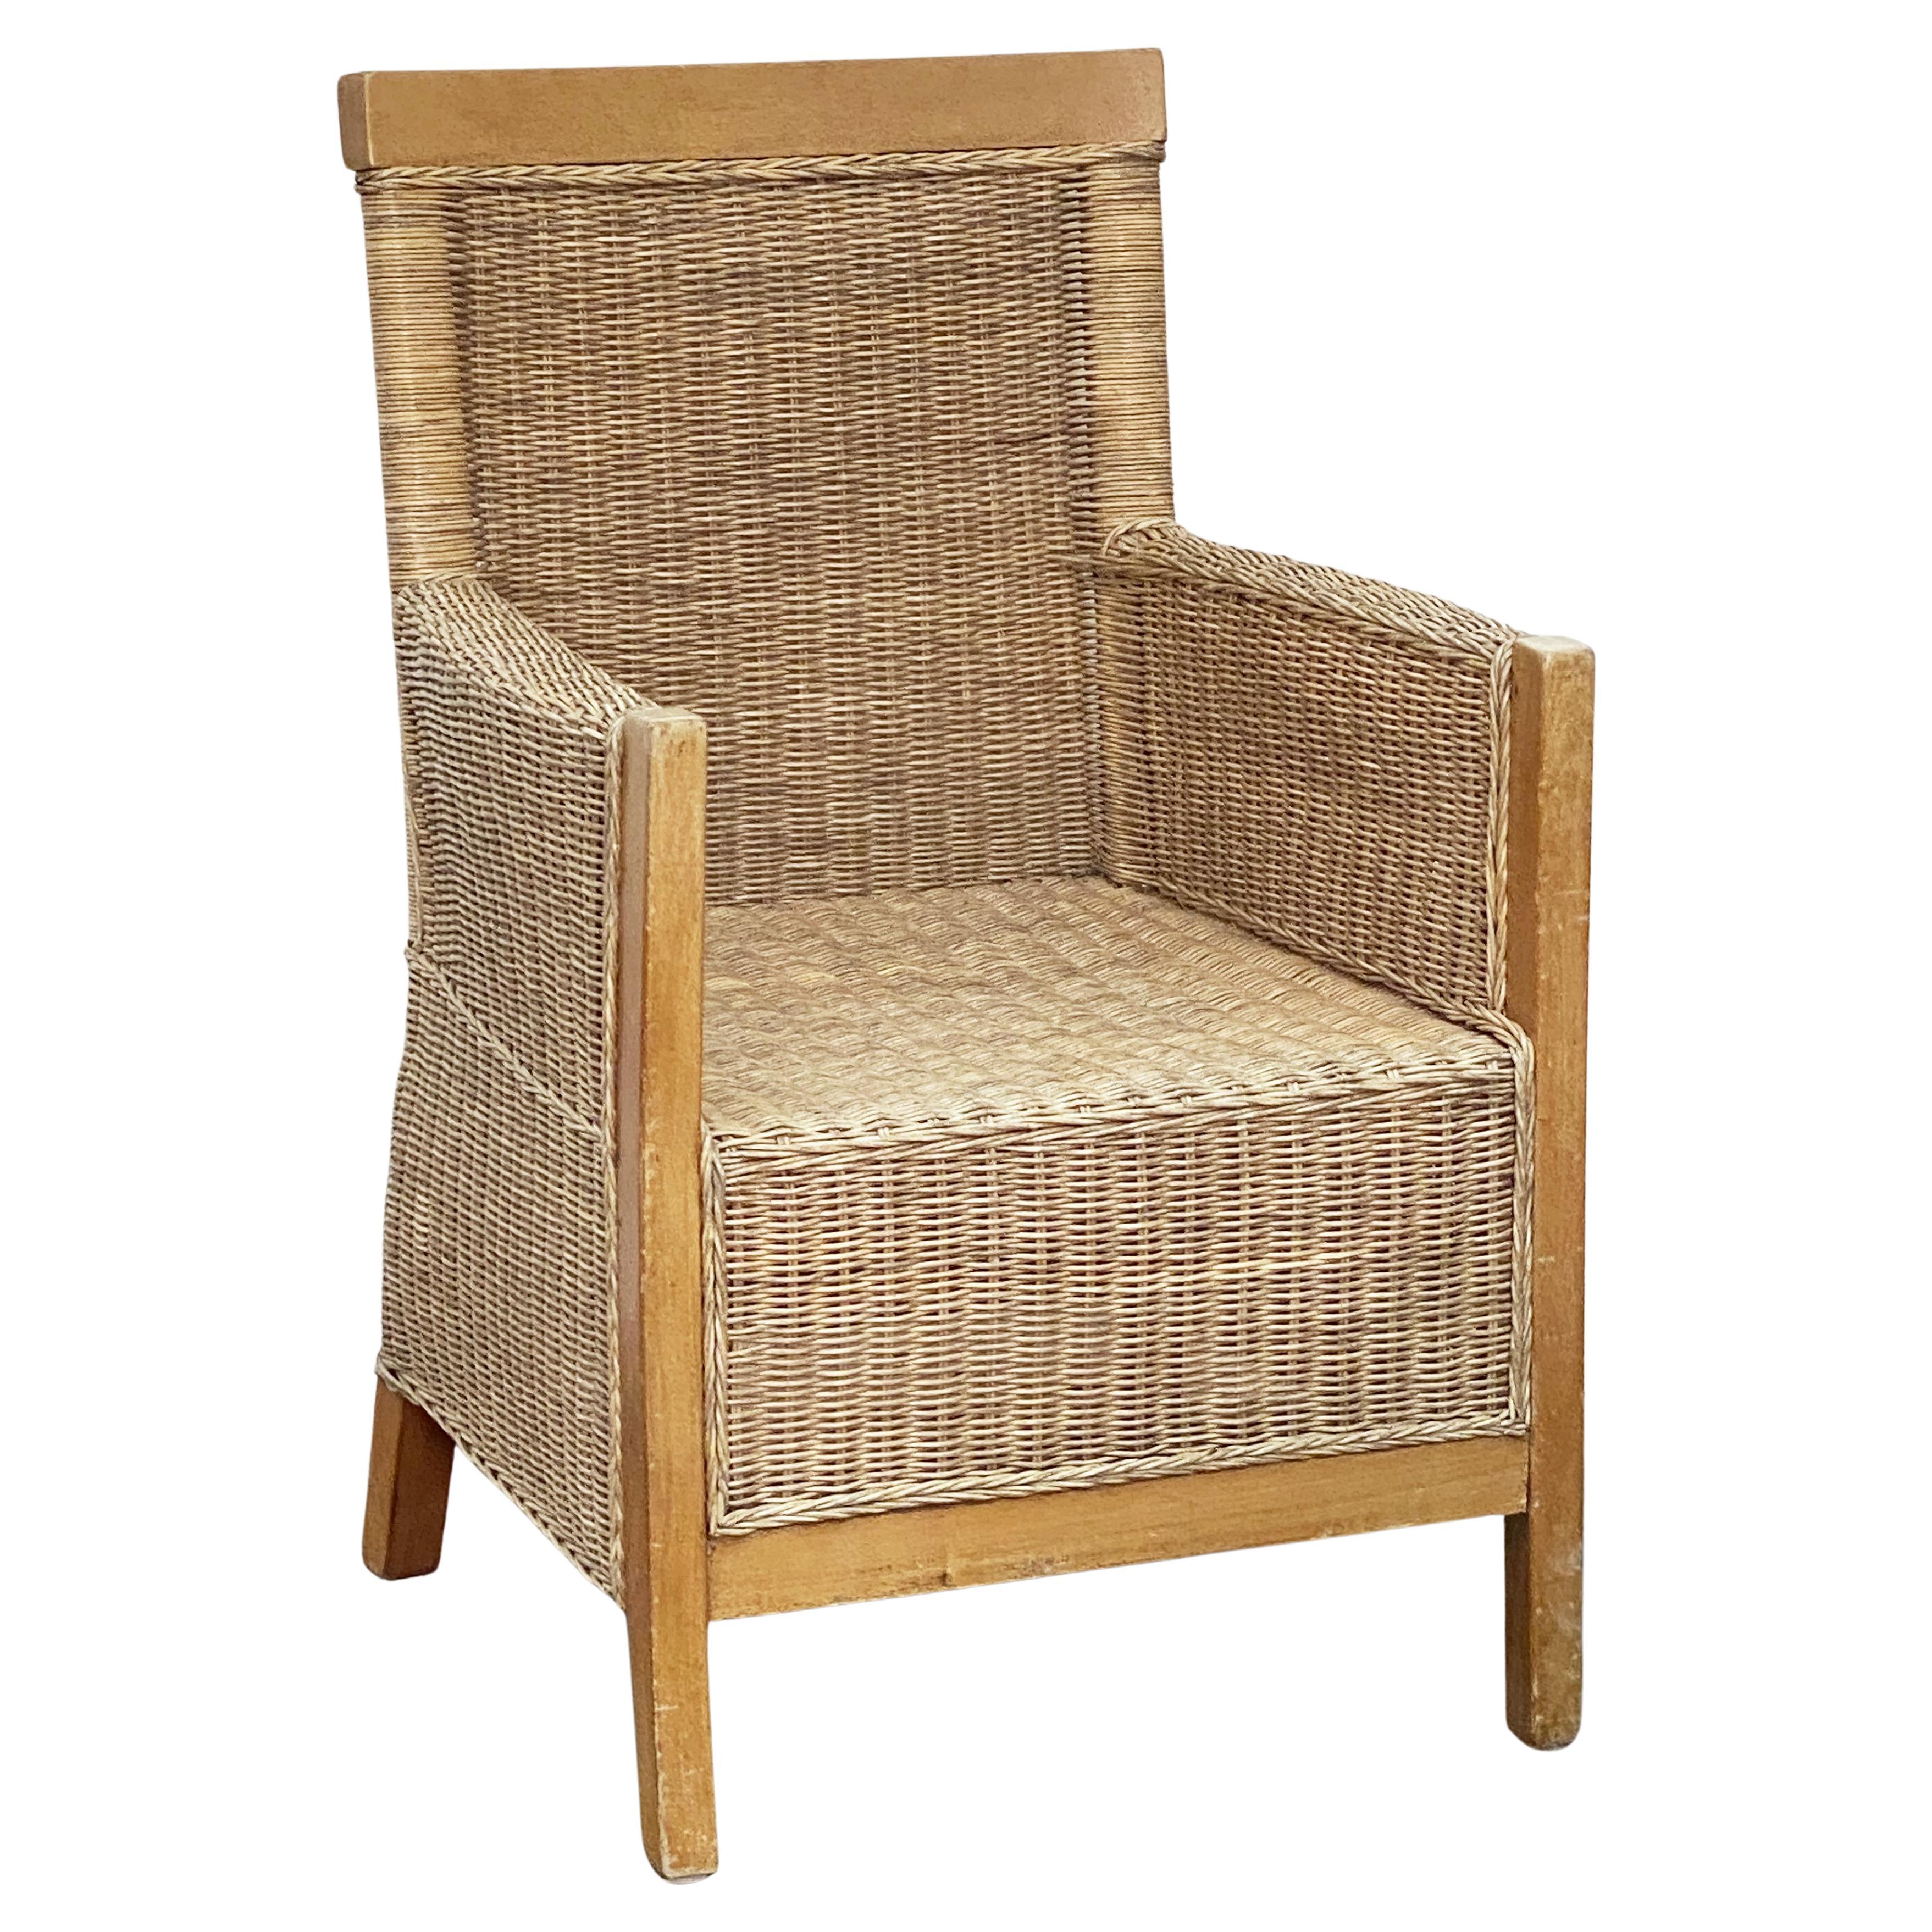 Großer französischer Sessel aus Buchenholz und geflochtenem Korbgeflecht, 'zwei verfügbar'